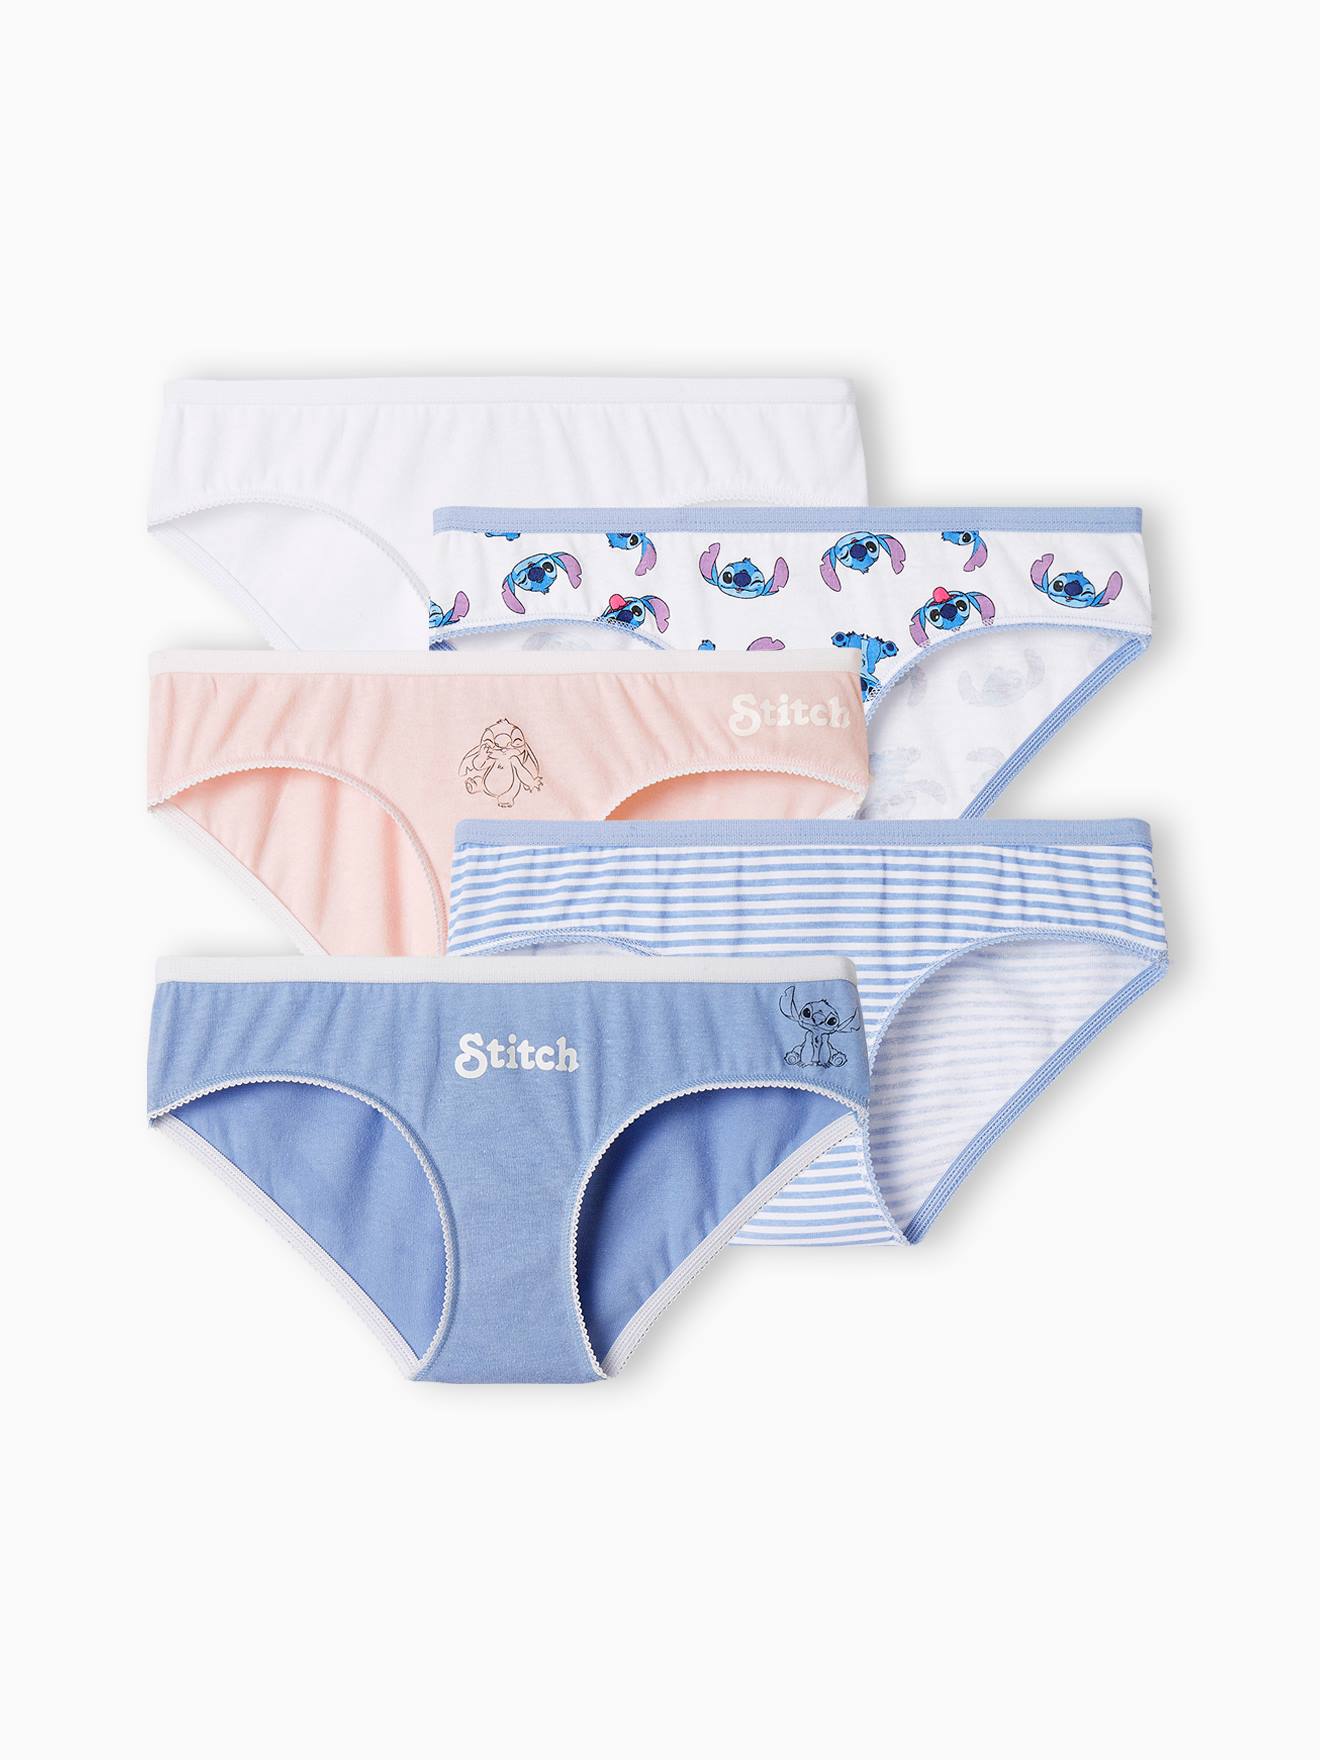 Pack of 5 Lilo & Stitch ©Disney briefs - Underwear - CLOTHING - Girl - Kids  